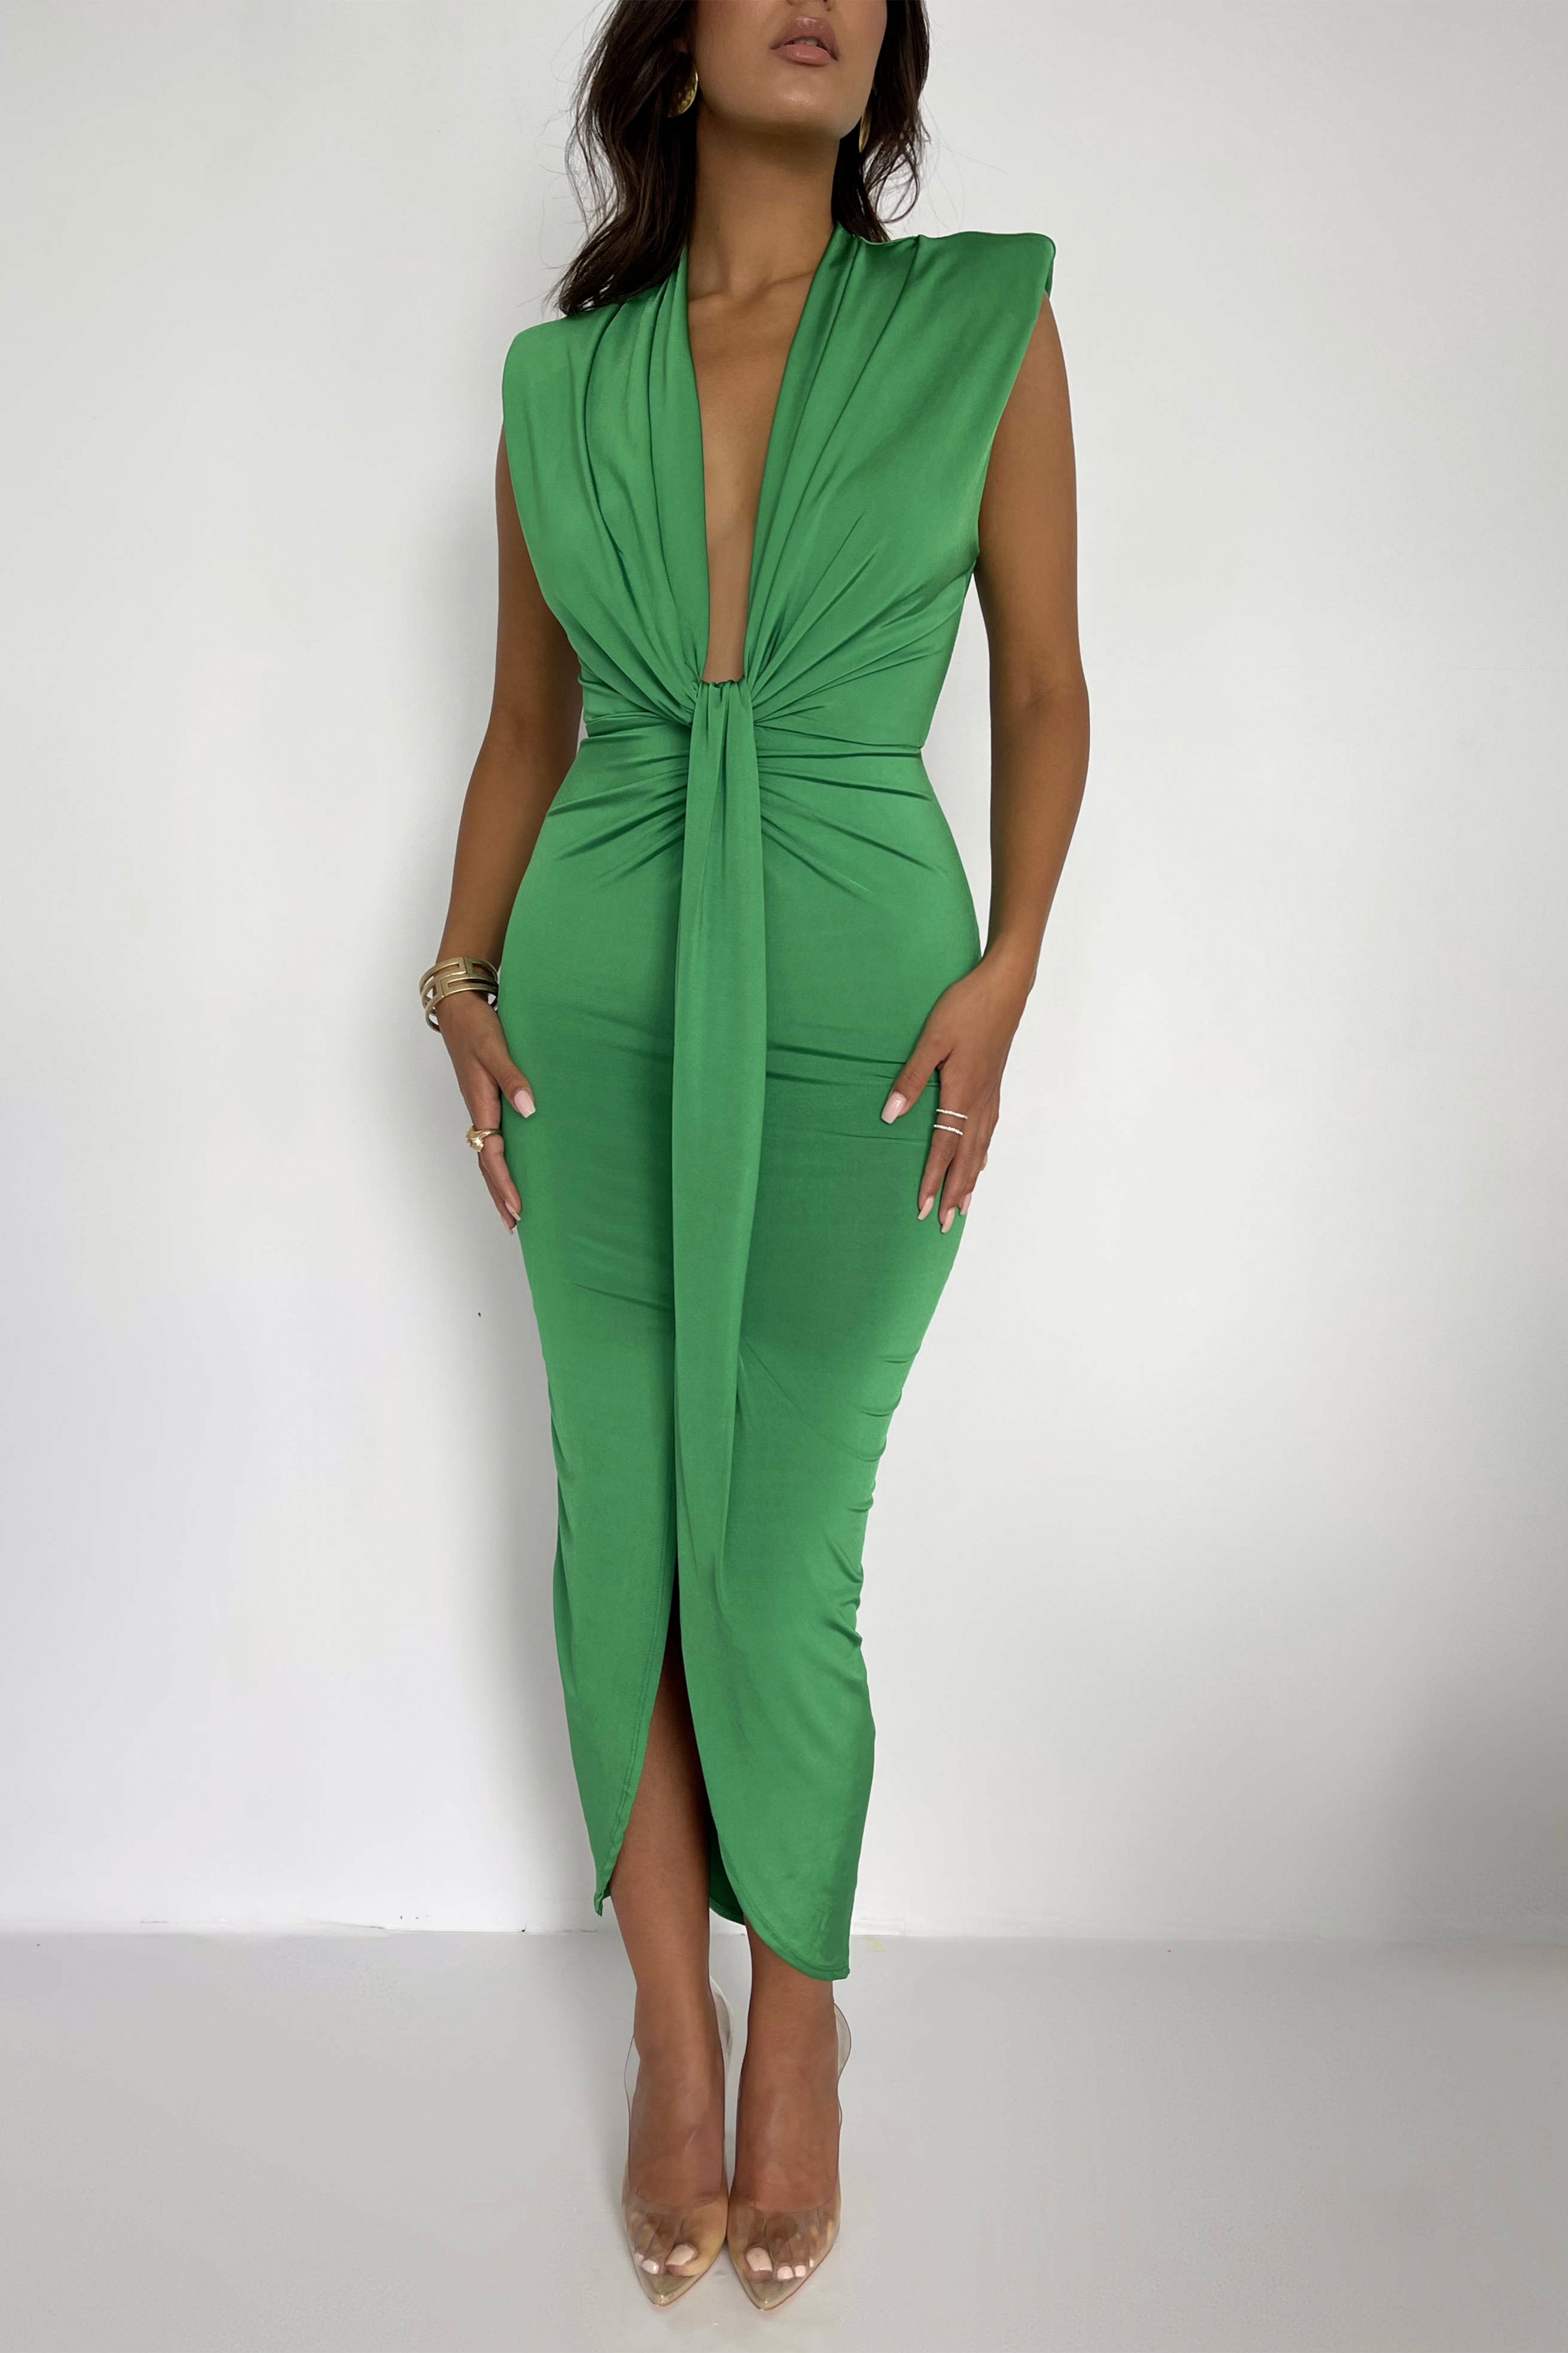 Medora Kelly Green Dress